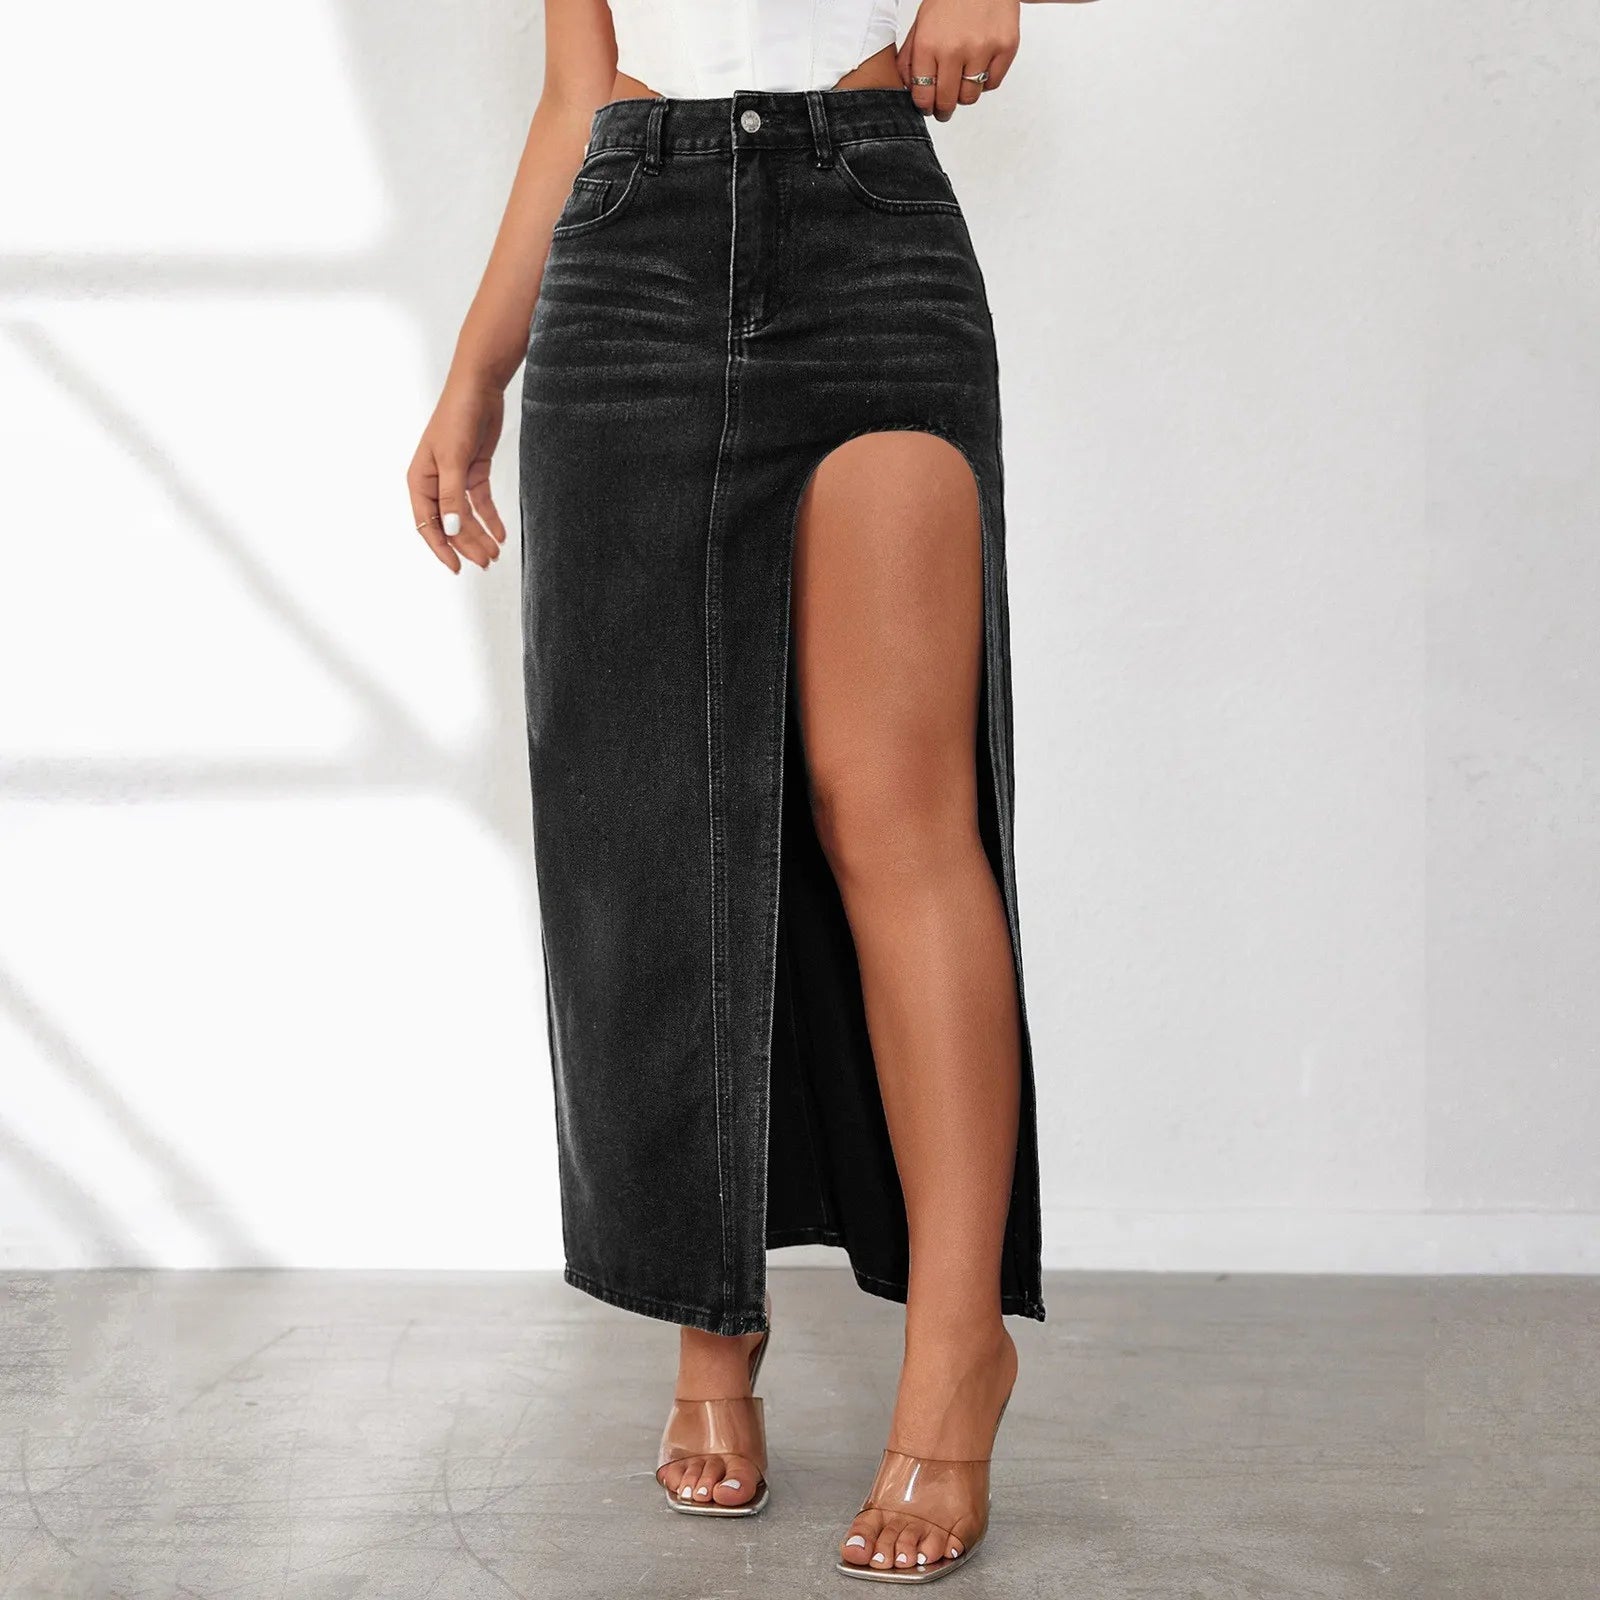 Black Long Denim Skirt with Slit